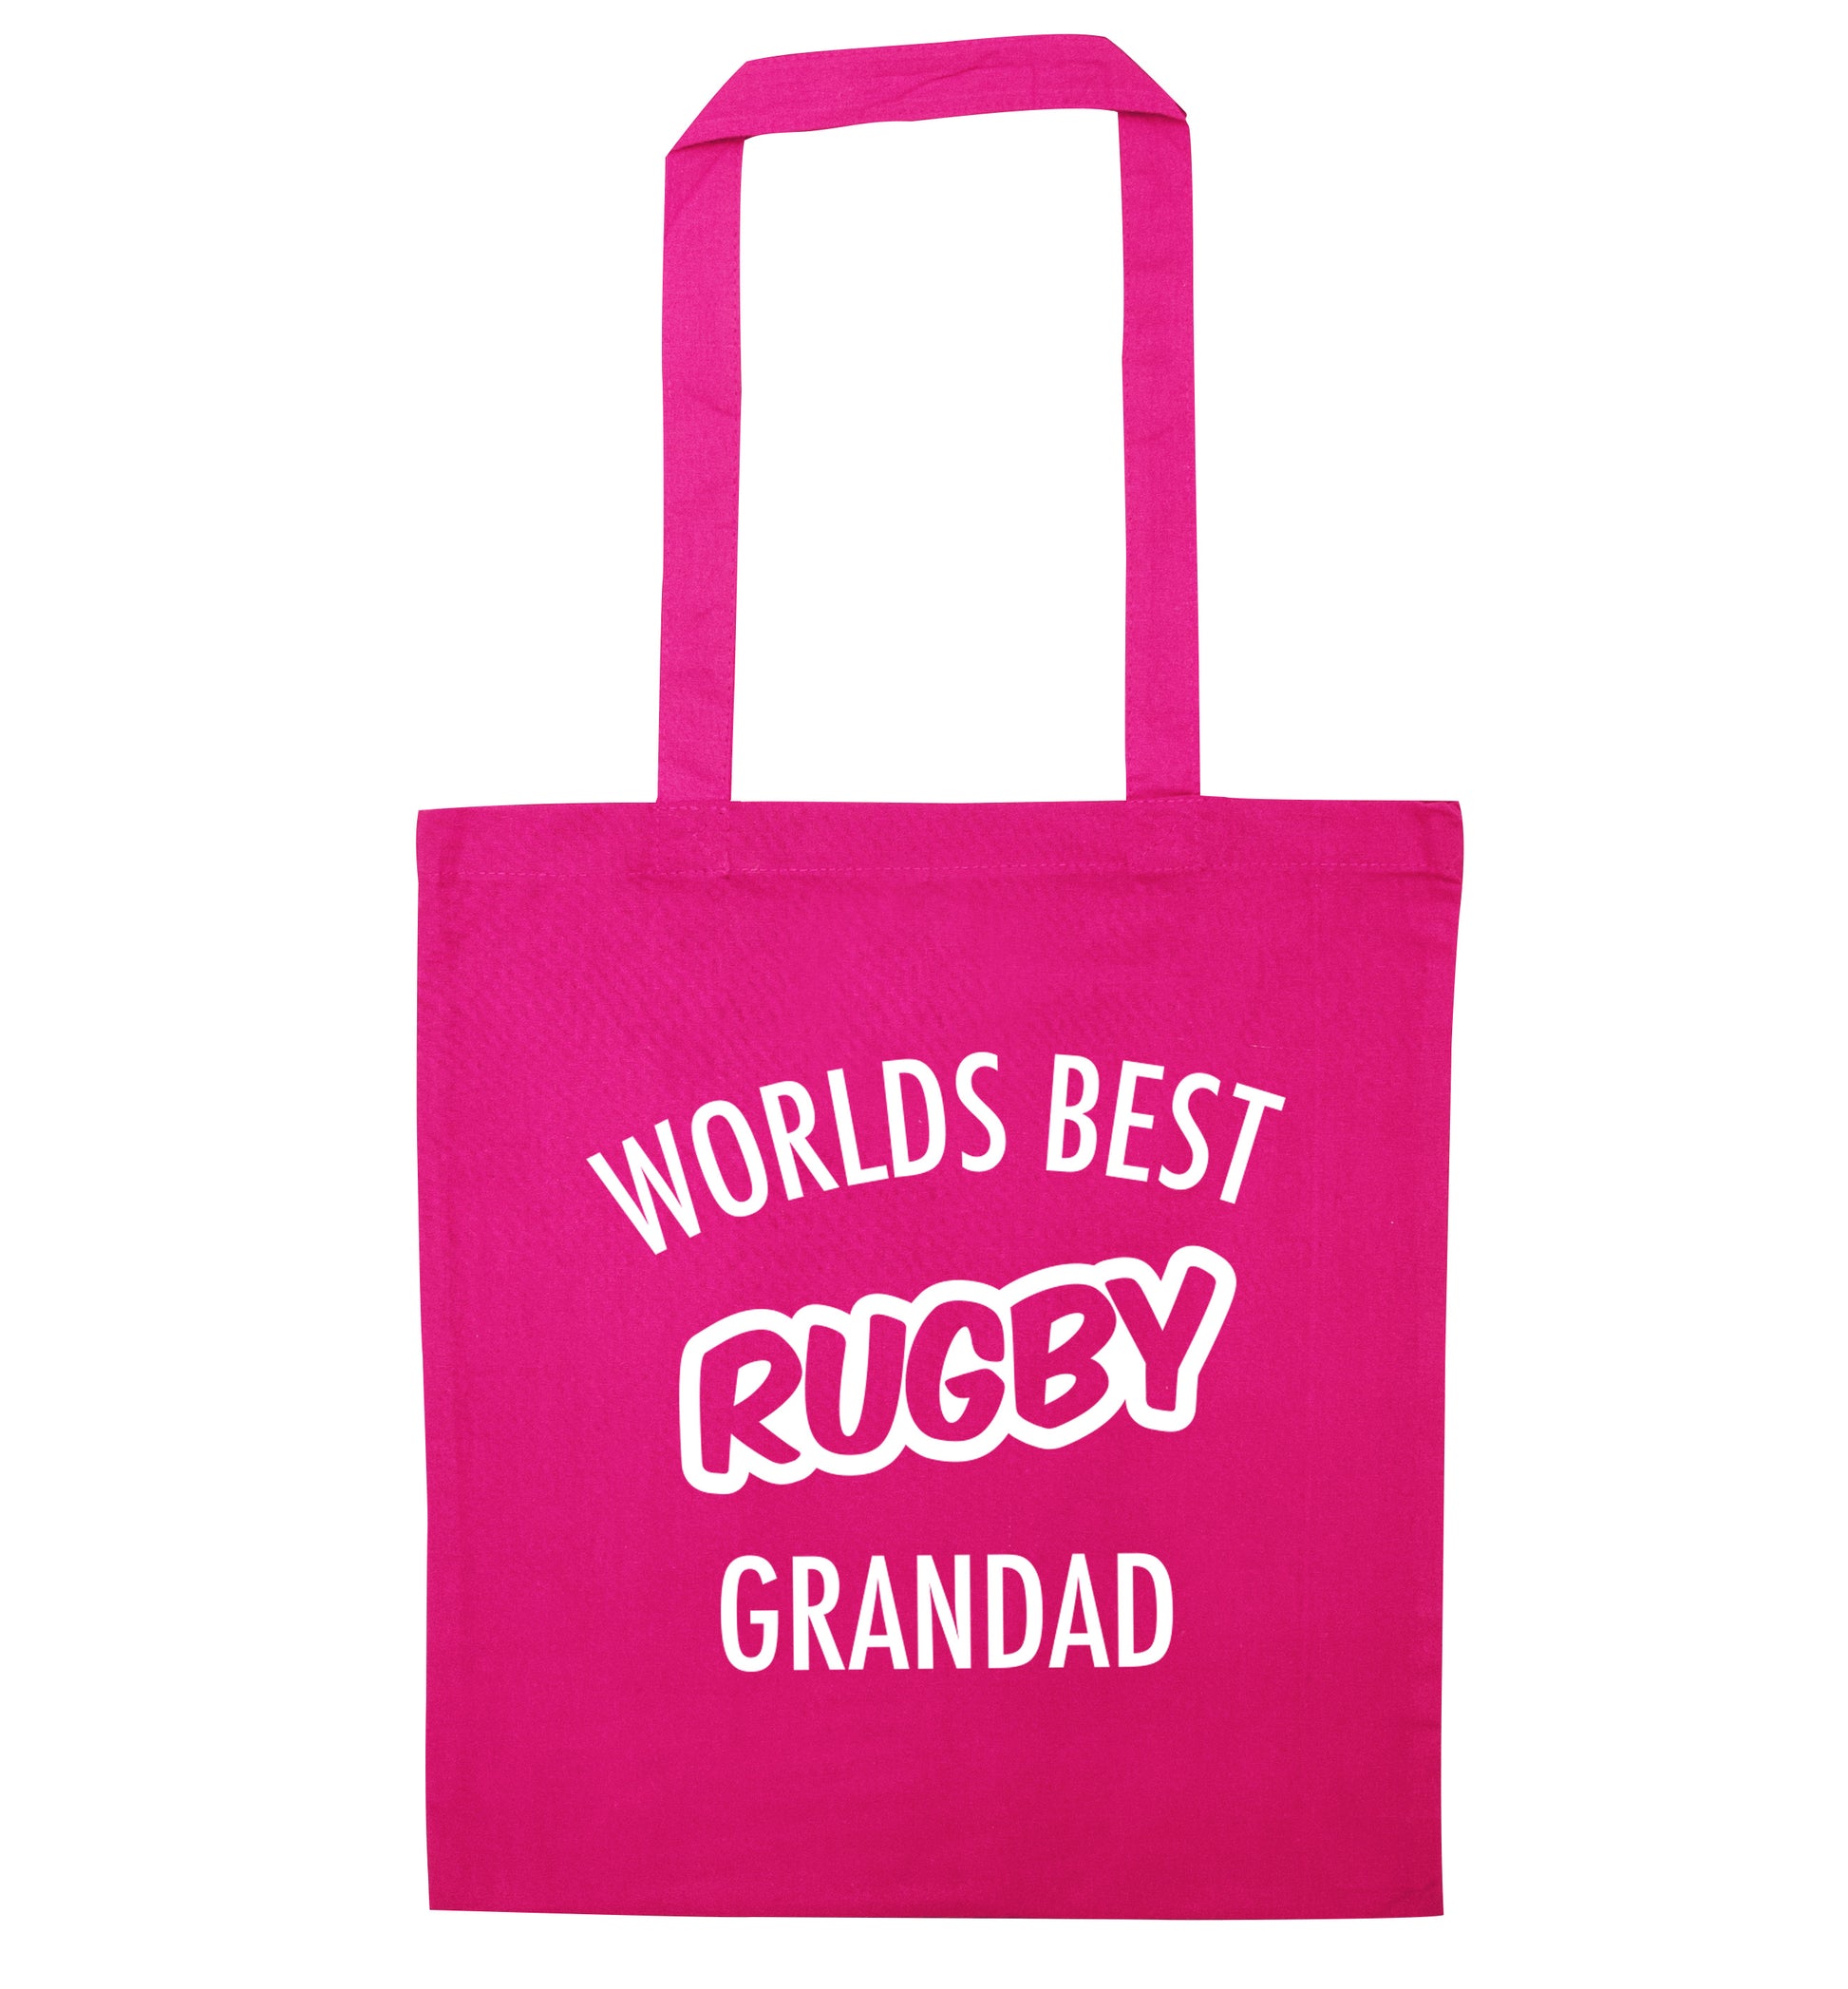 Worlds best rugby grandad pink tote bag